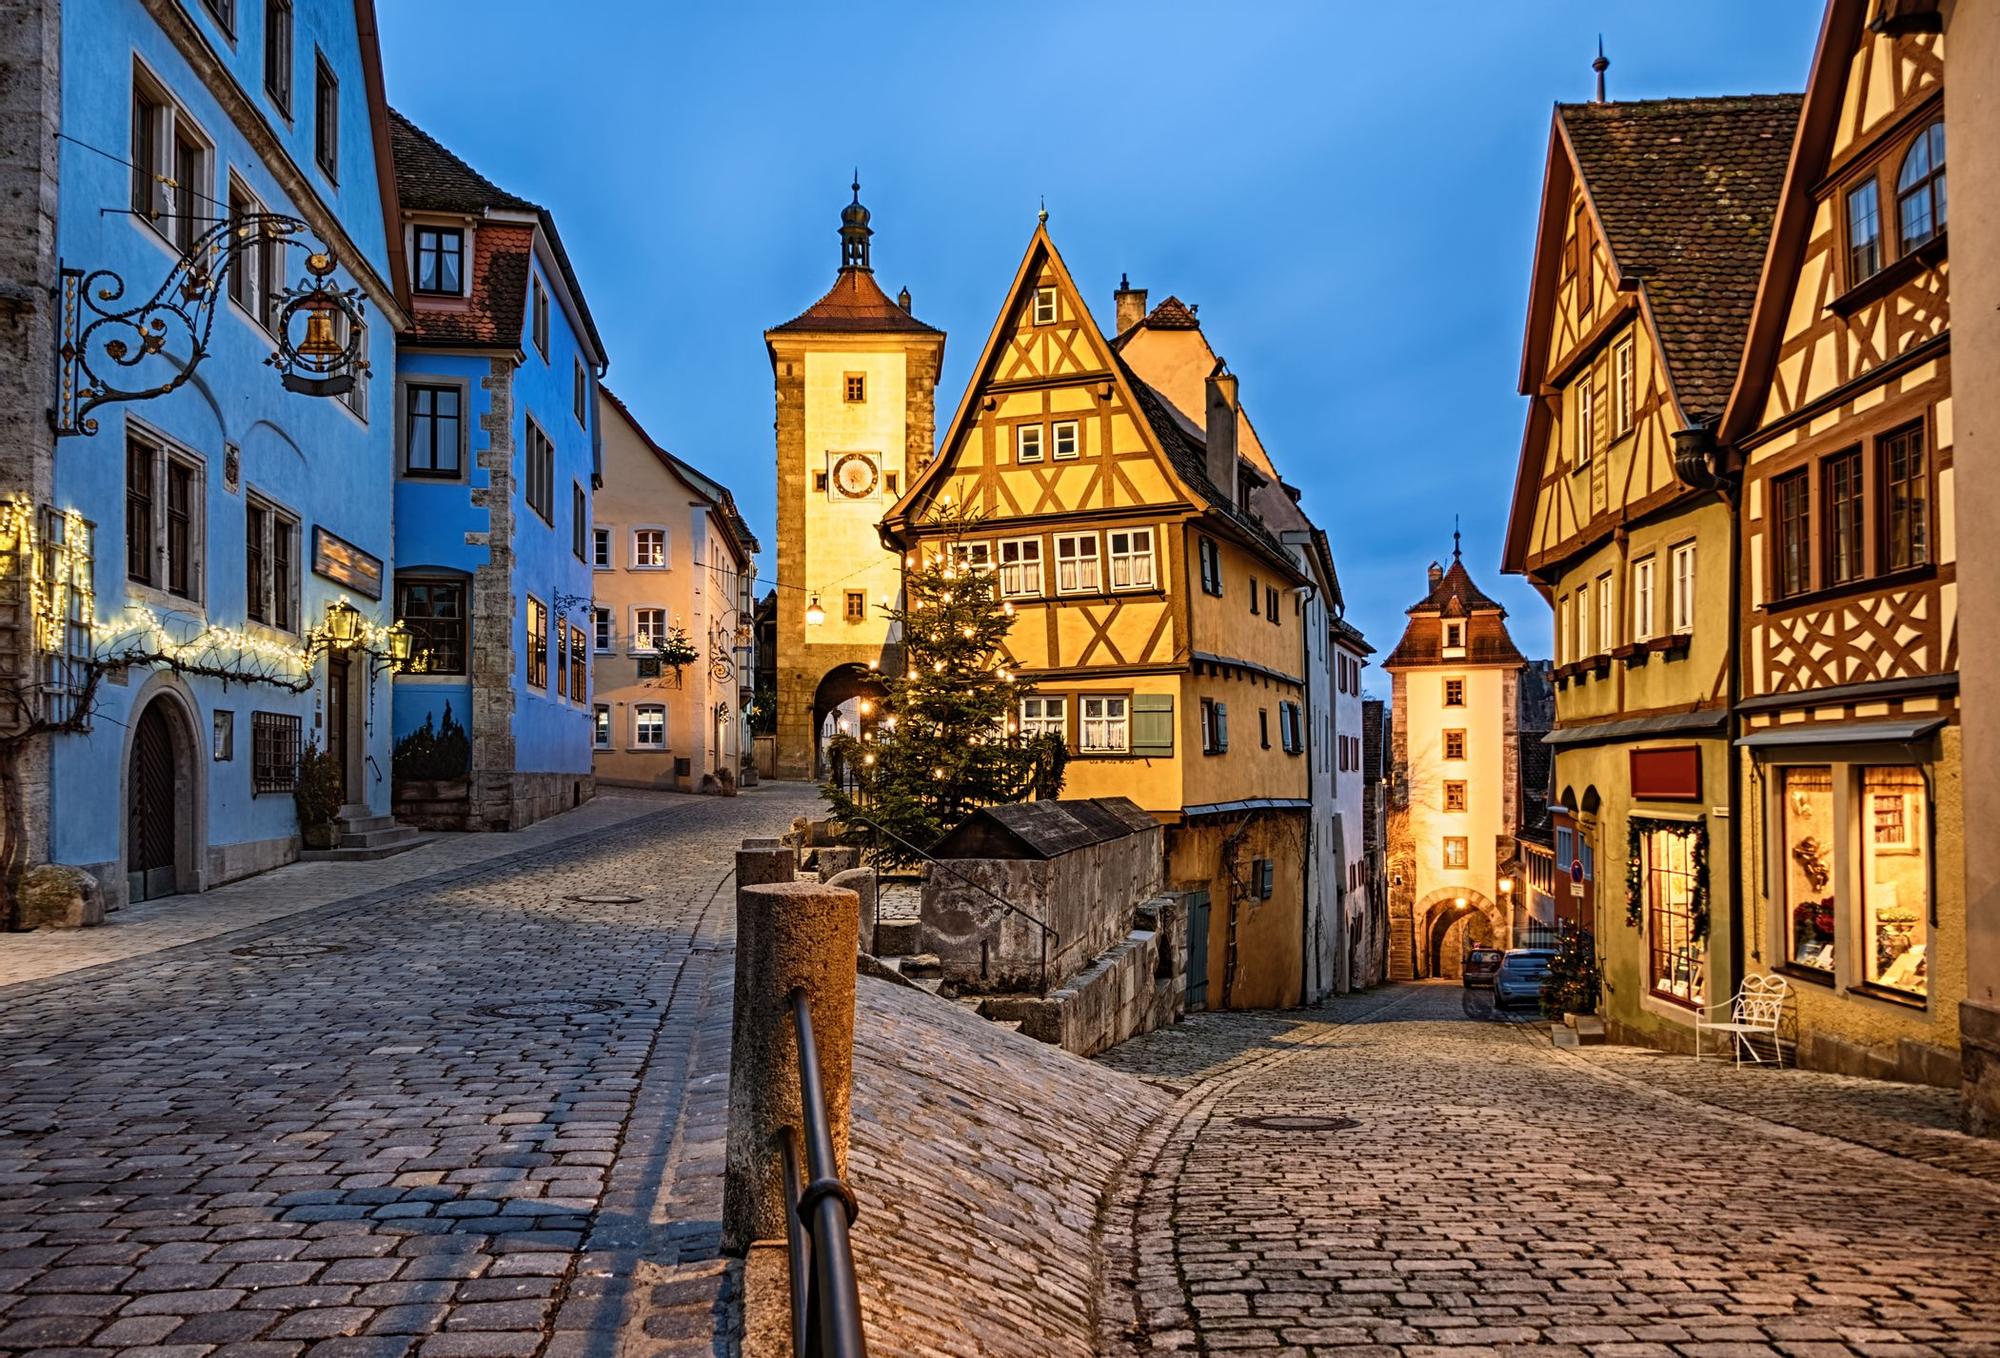 Rothenburg tiene el escenario ideal para disfrutar la Navidad